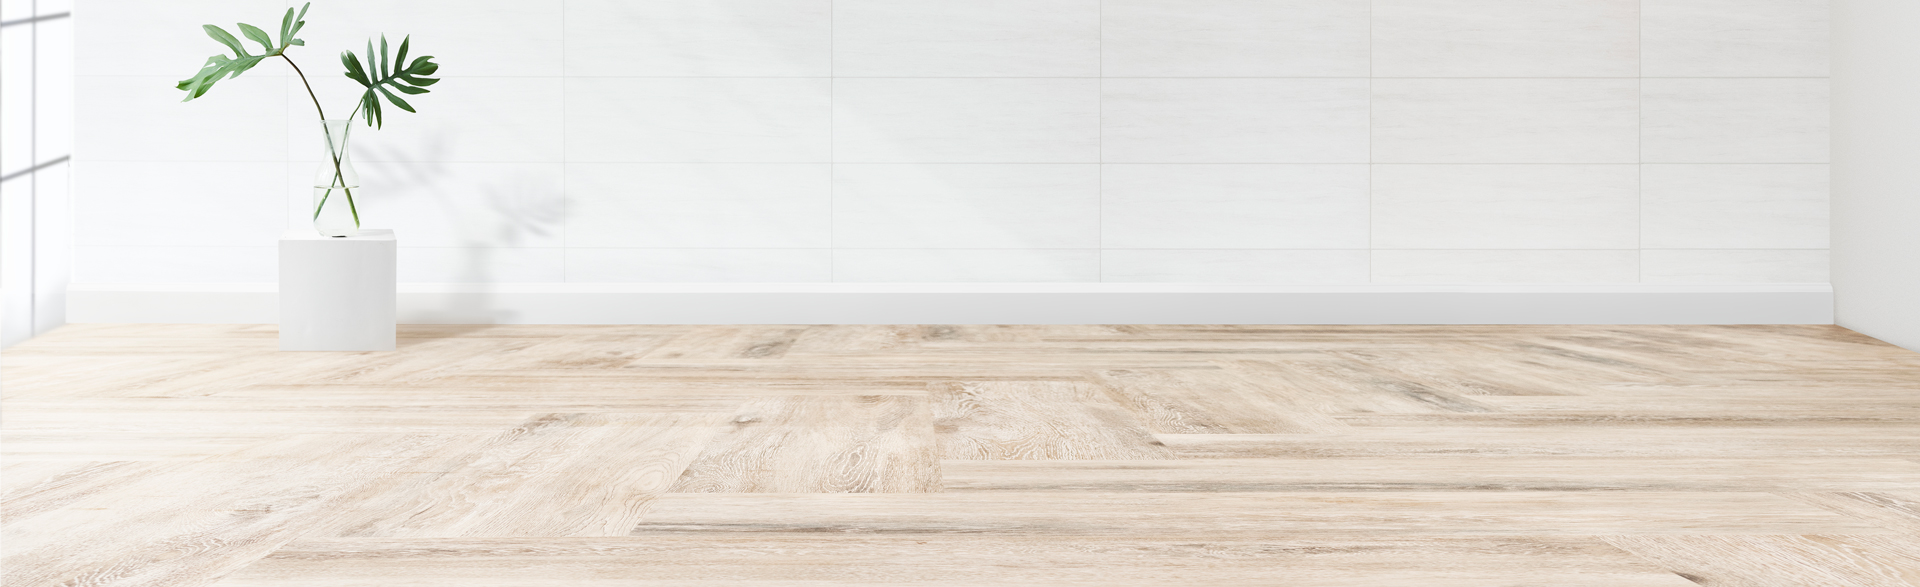 Flooring Financing For Your House, Hardwood Floor Financing